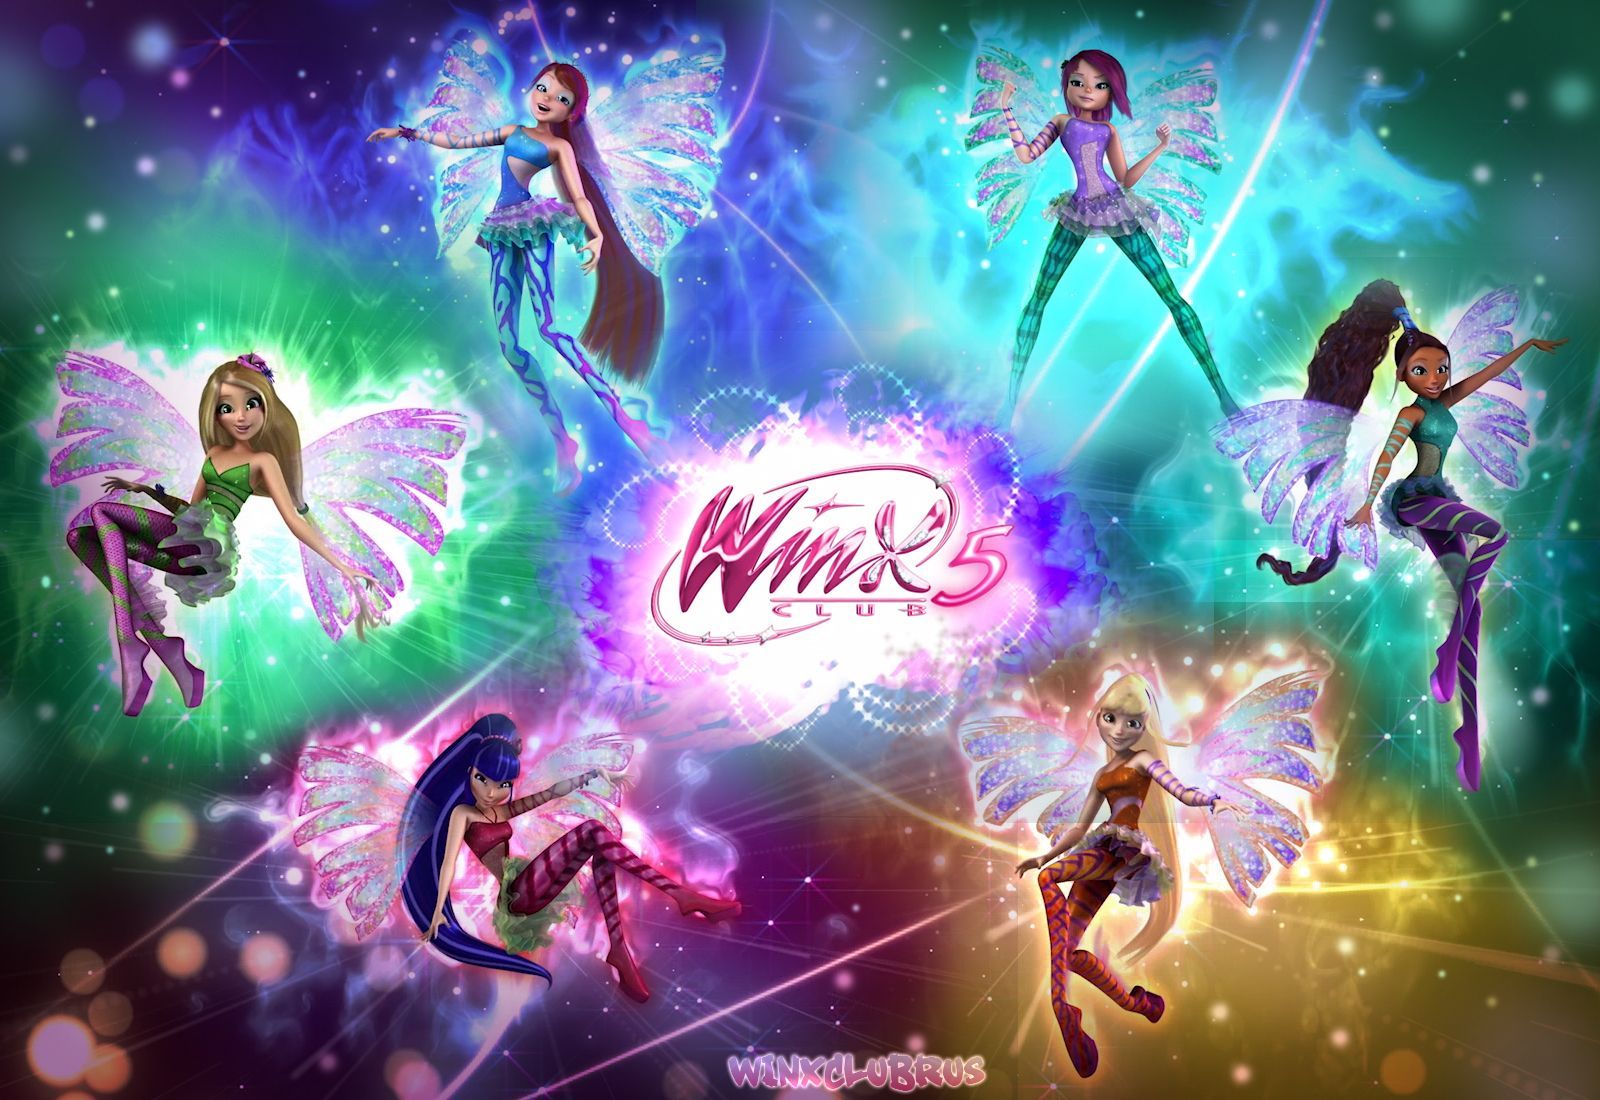 The Winx Club Fairies Wallpaper: Winx club Sirenix 3D. Winx club, Club, Fairy wallpaper